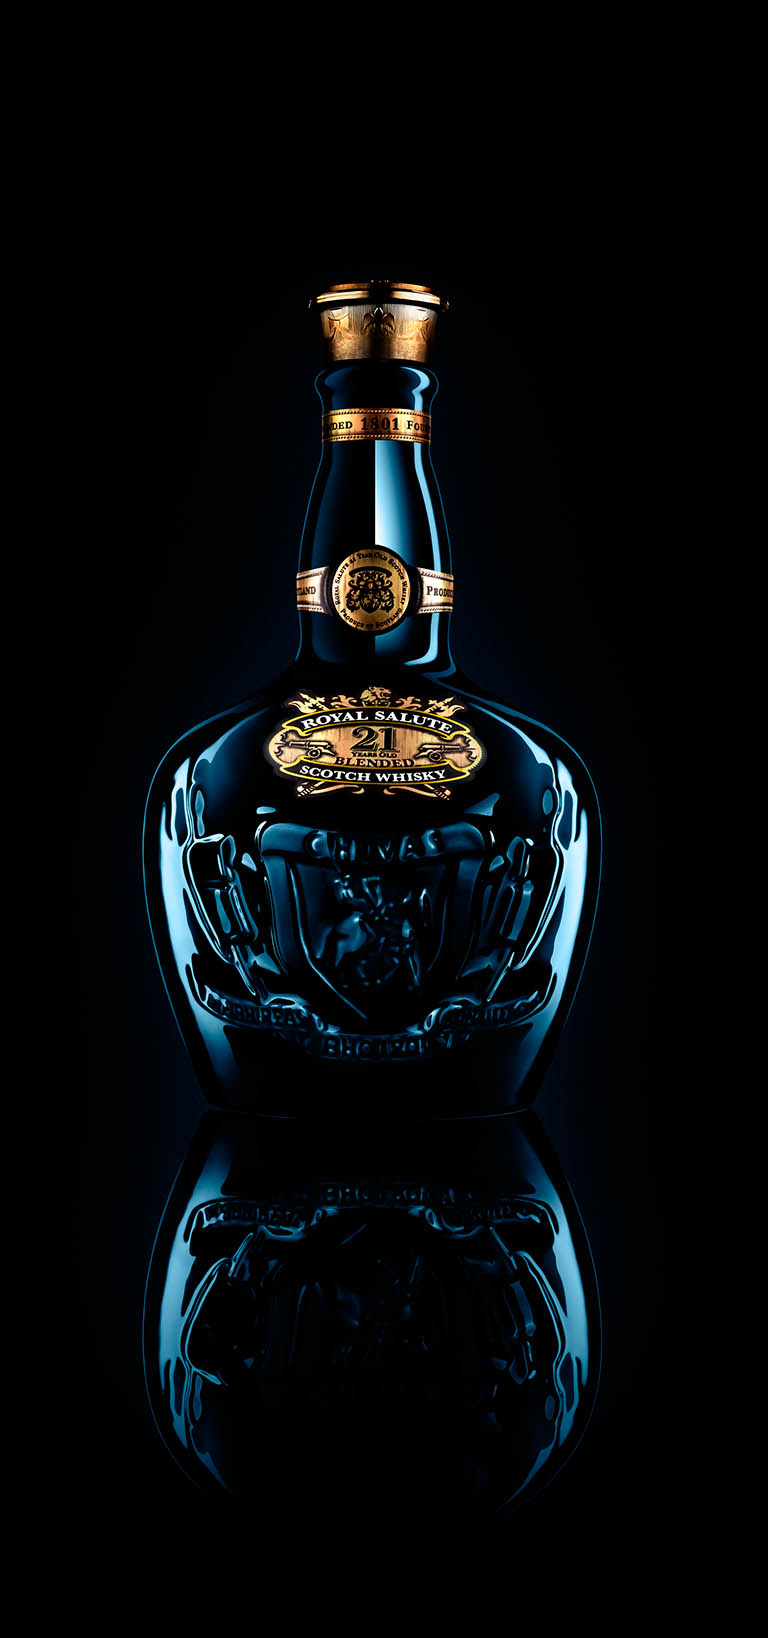 Packshot Factory - Bottle - Chivas Royal Salute whisky bottle